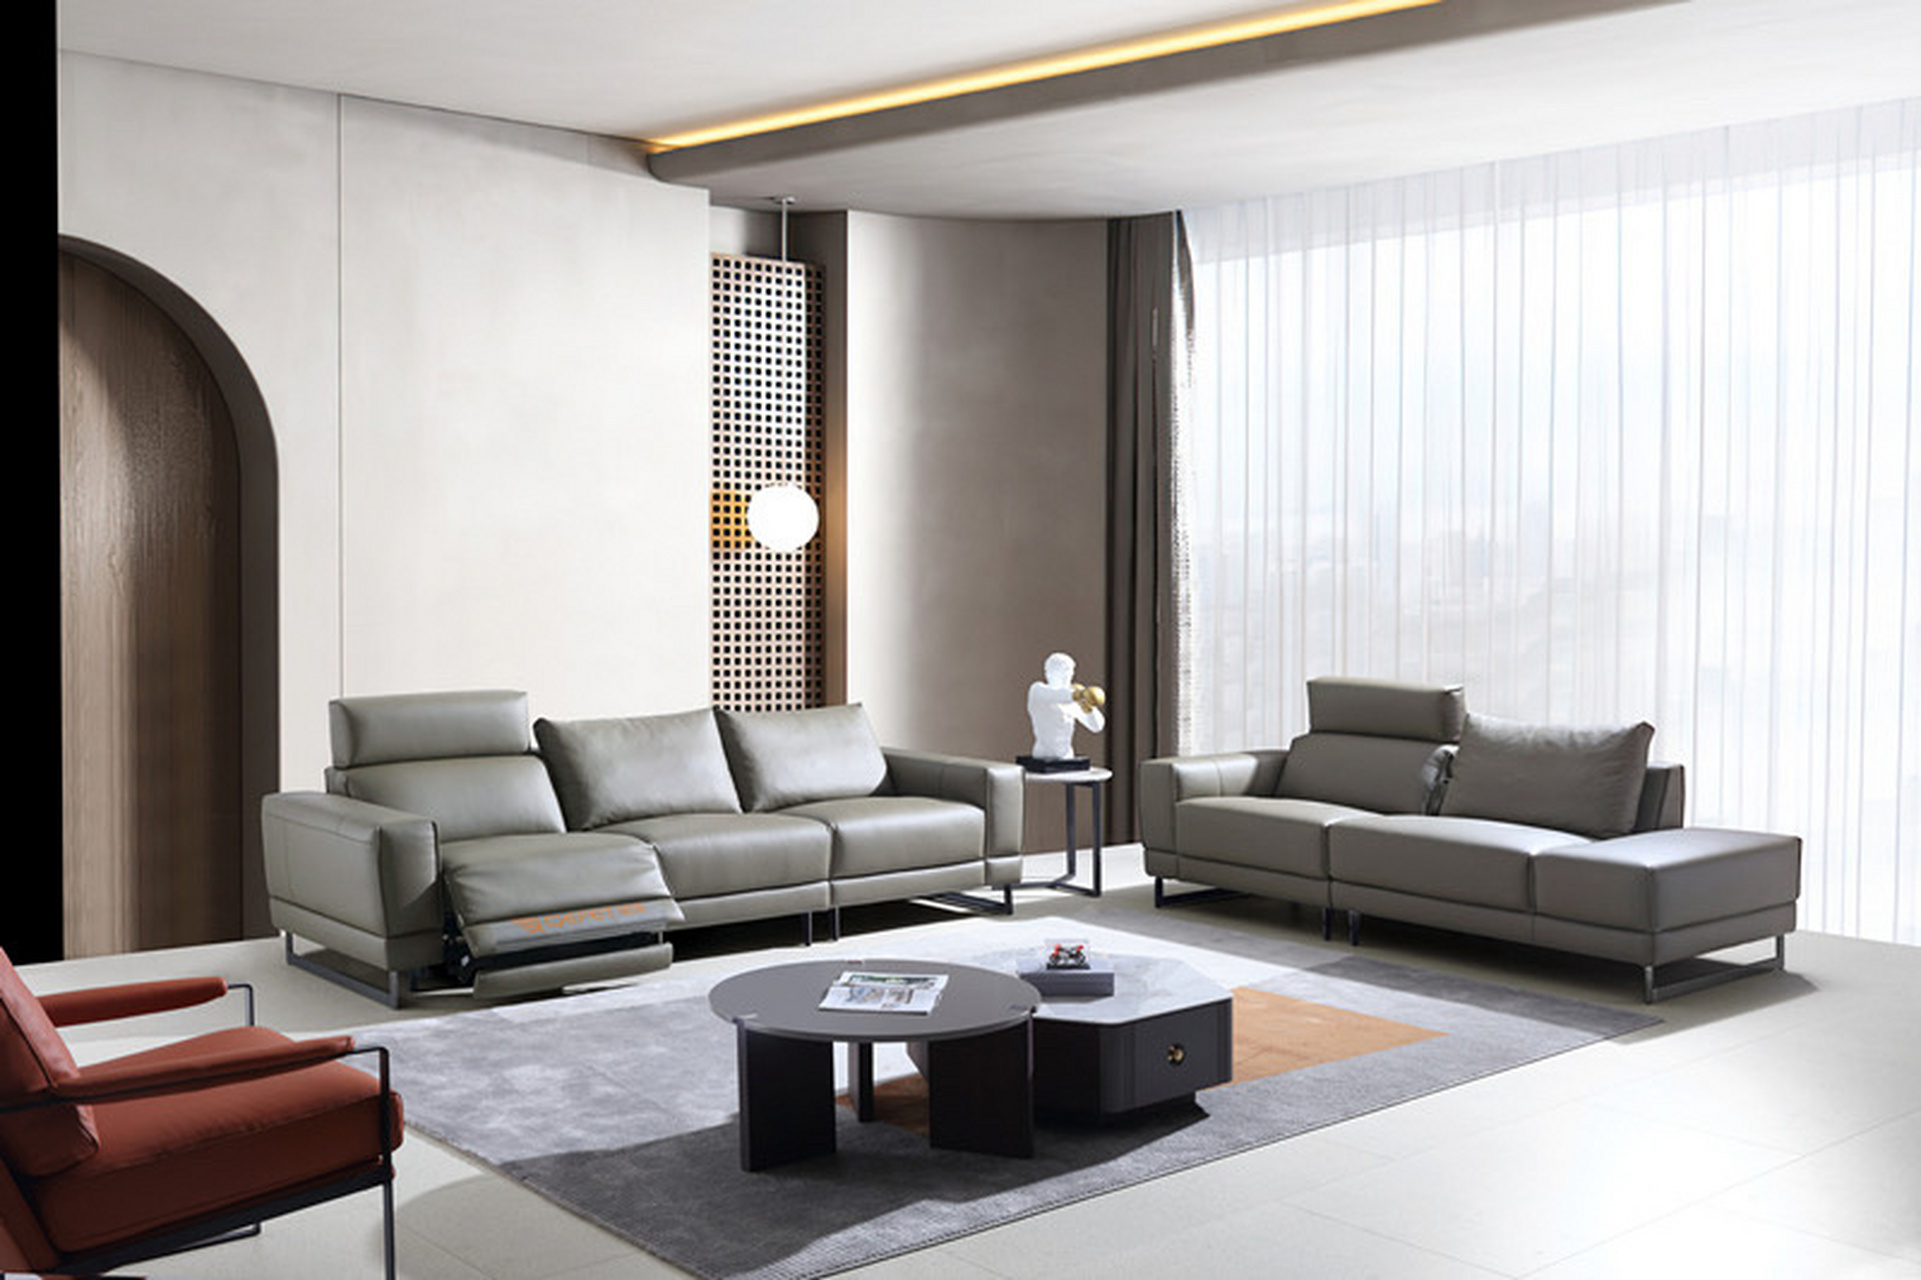 琪辉家具,琪辉功能家具  沙发是客厅中的灵魂,它承载着装饰的主色调,